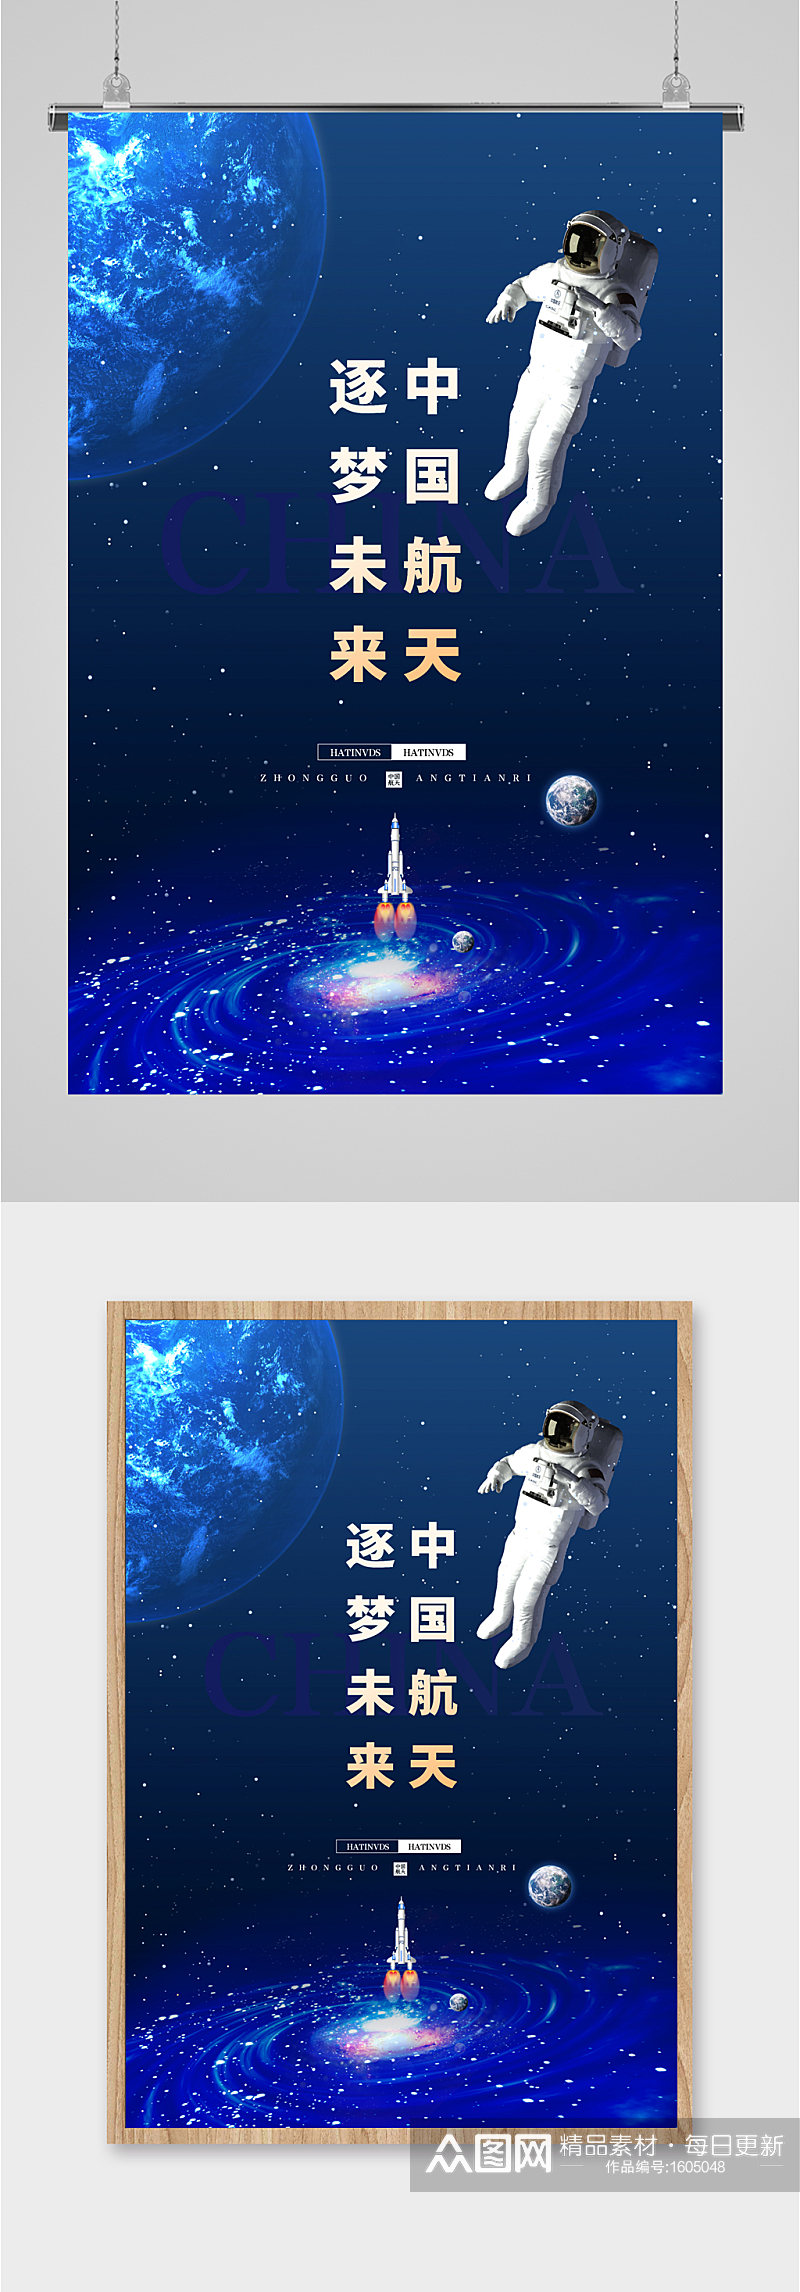 中国航天筑梦未来蓝色科技海报素材